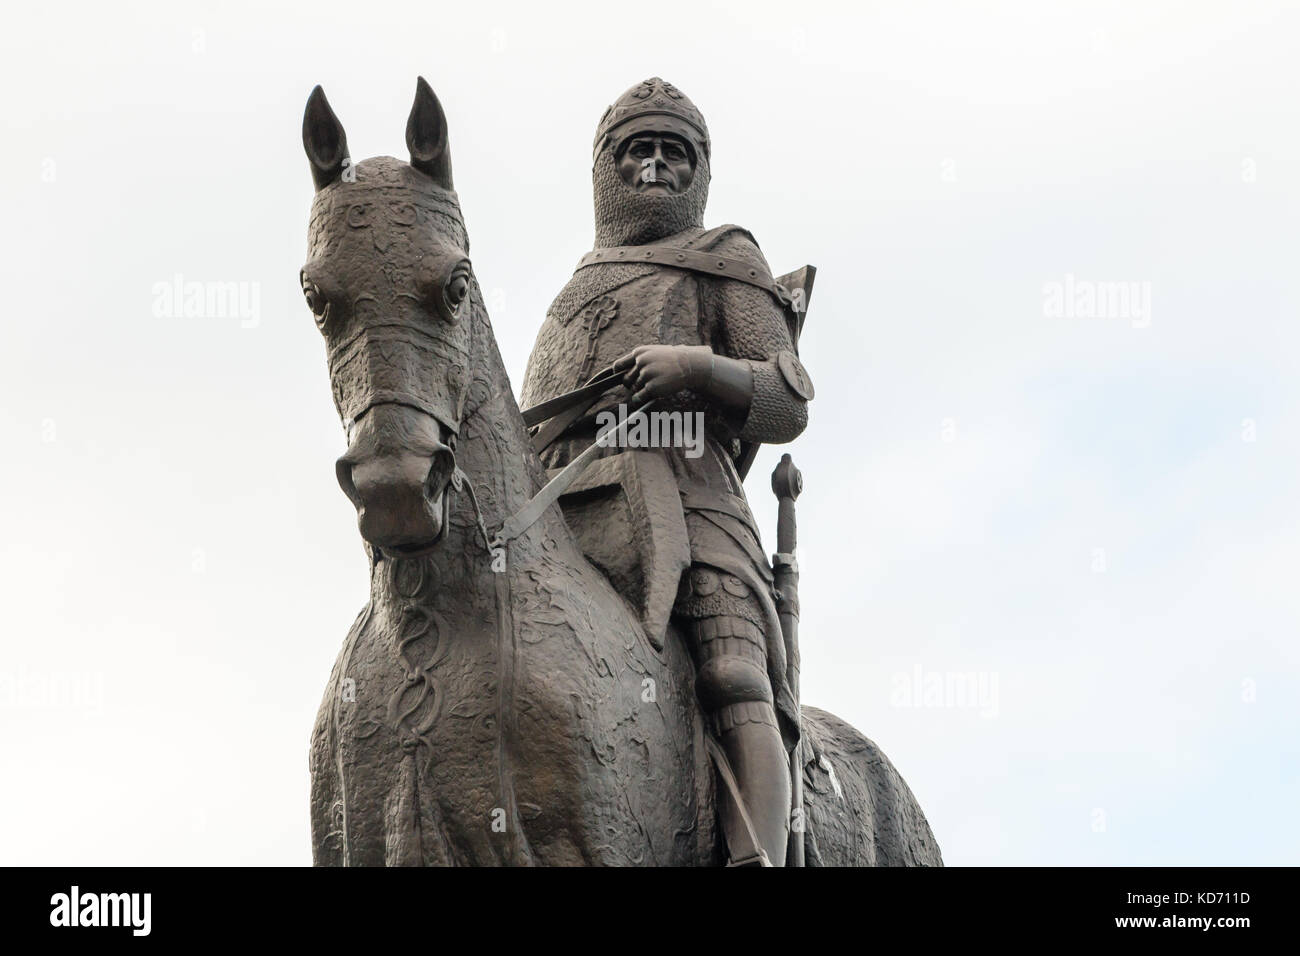 Statue von Robert dem Bruce König von Schotten, am Denkmal für die Schlacht von Bannockburn, Bannockburn Visitor Centre, Stirling Schottland Stockfoto